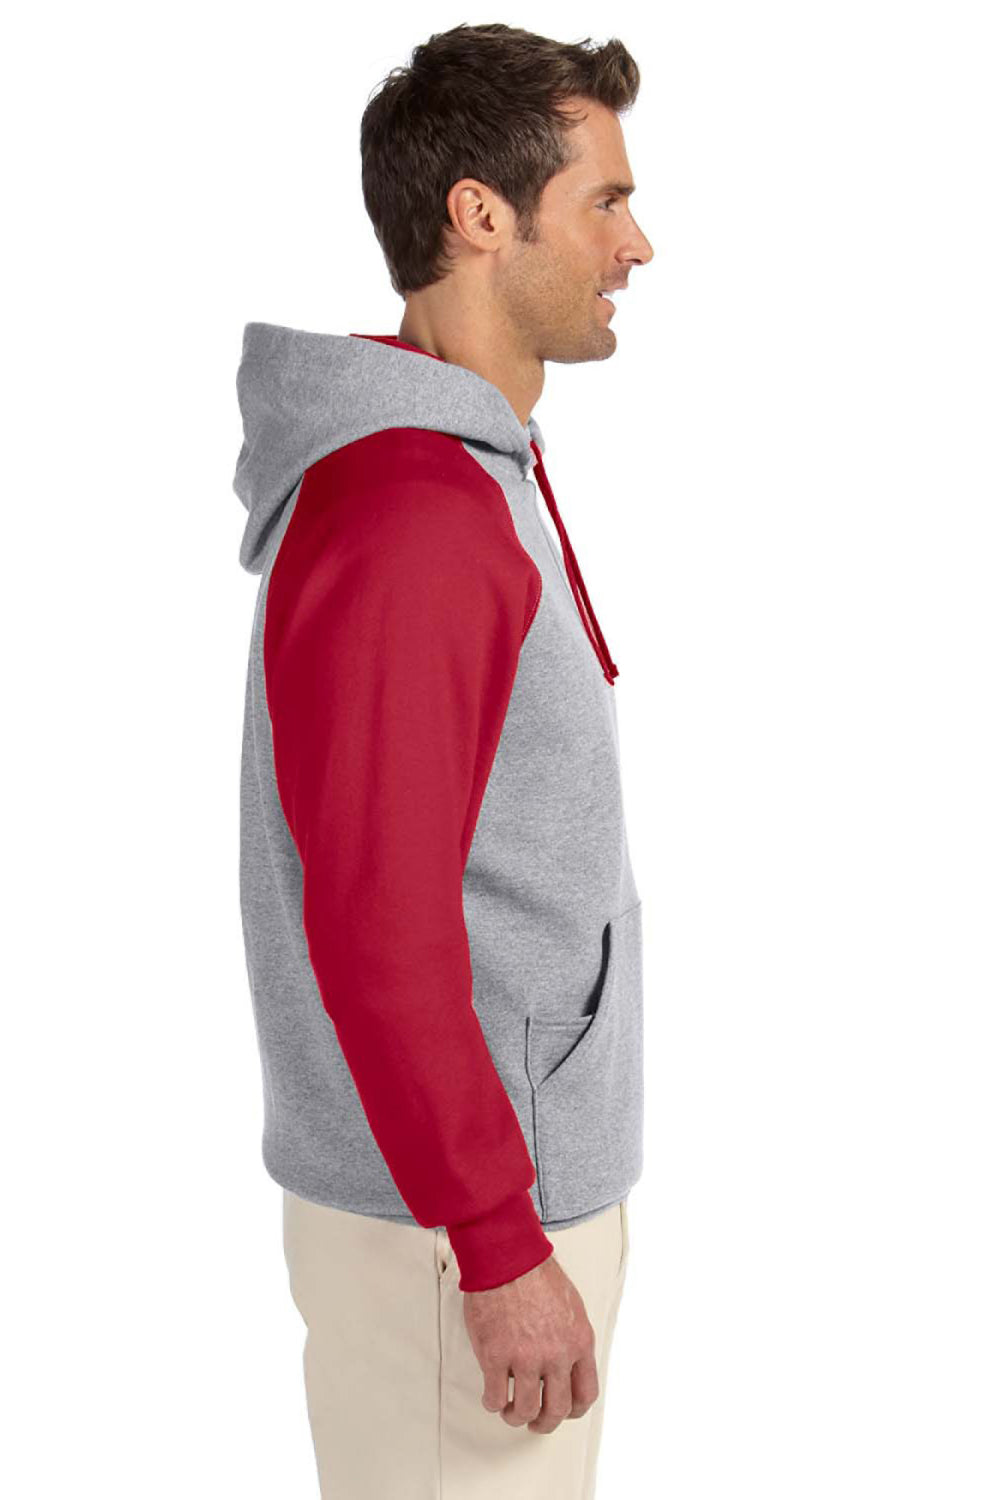 Jerzees 96CR Mens NuBlend Fleece Hooded Sweatshirt Hoodie Oxford Grey/Red Side